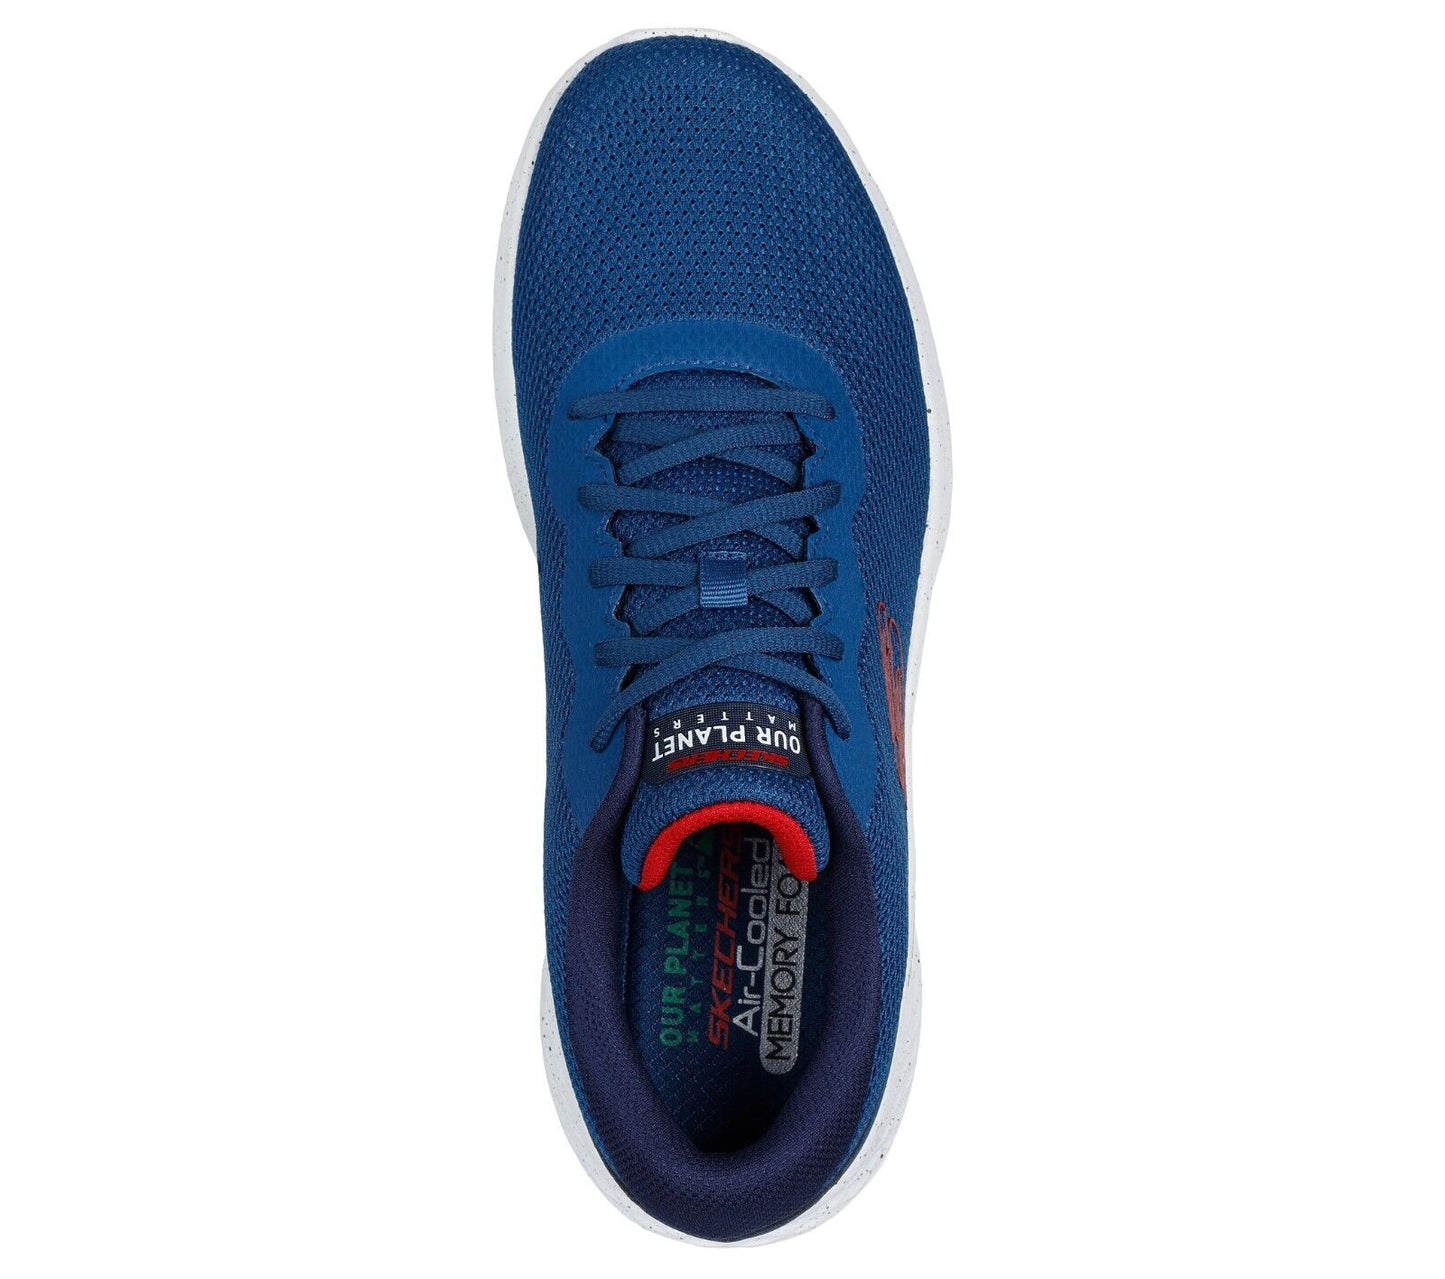 Skechers Shoes Men Memory Foam Sport Blue White Comfort Casual Walk Li ...